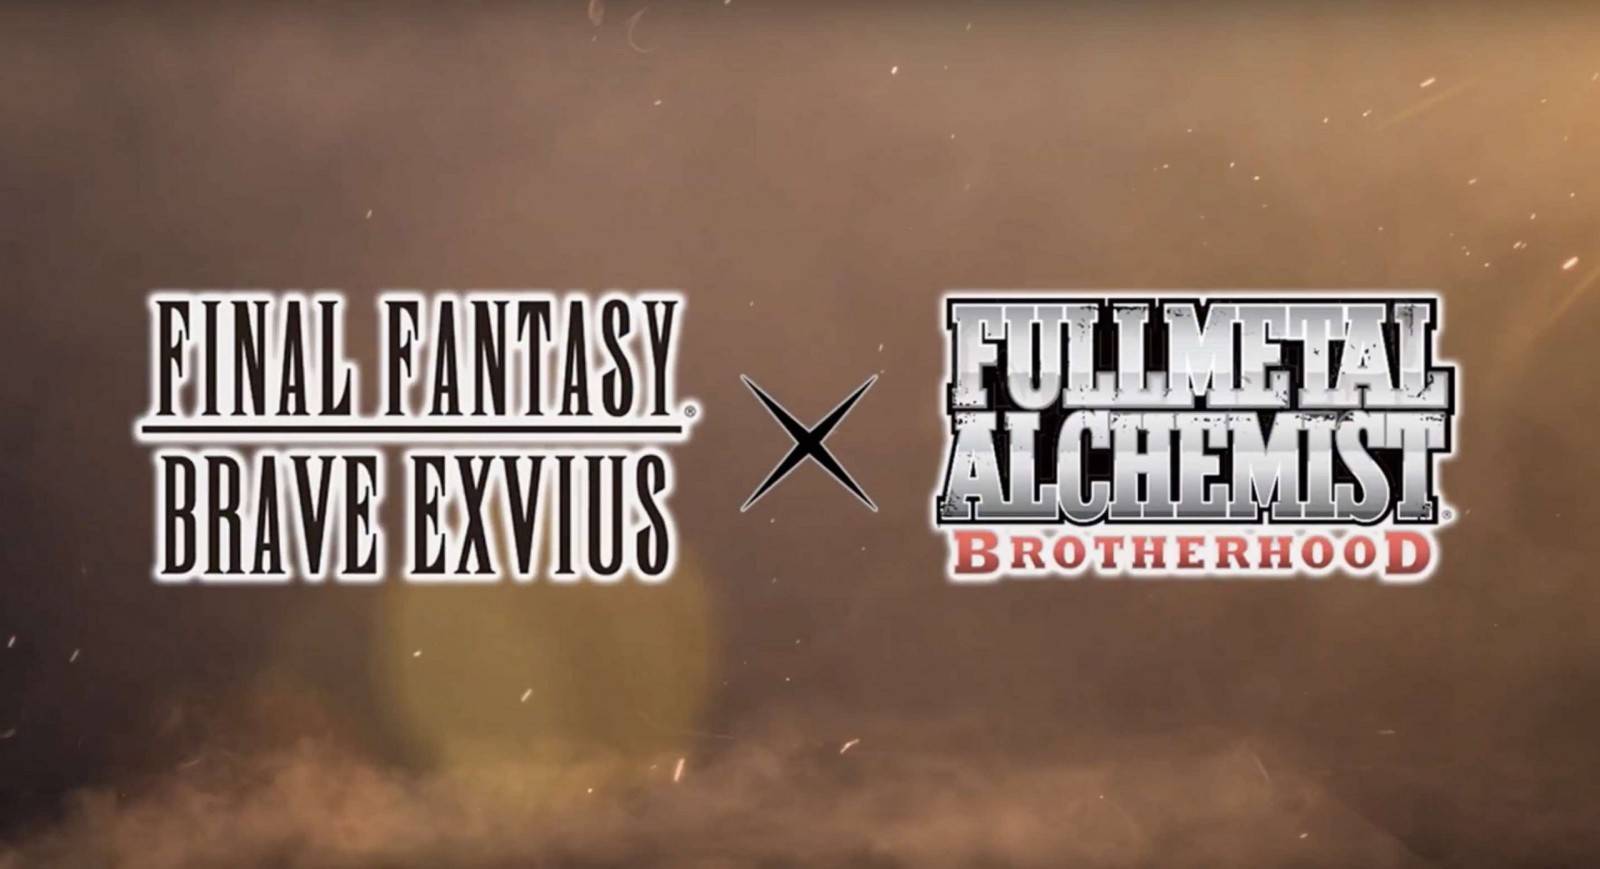 Final Fantasy tendrá colaboración con Full Metal Alchemist 2